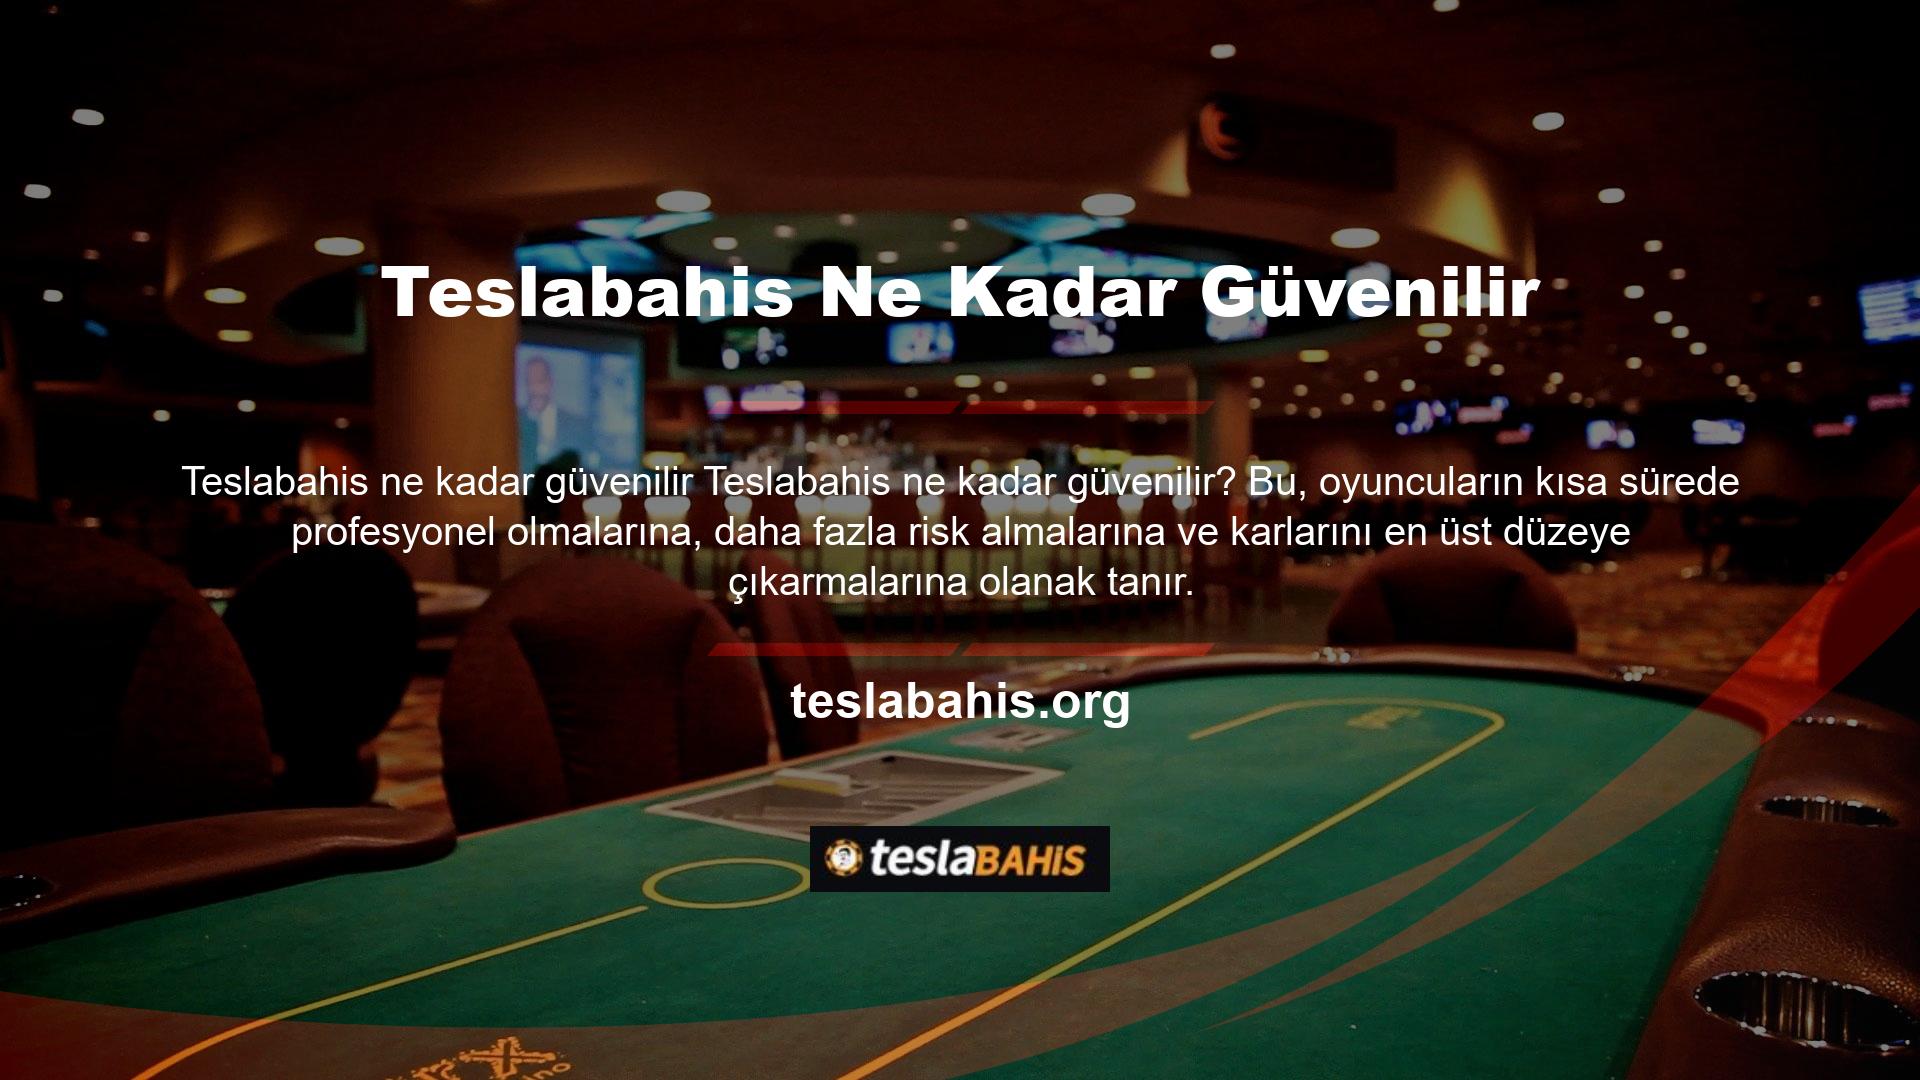 Bakara, poker, rulet ve daha pek çok casino oyununu destekleyen bağlantılı bir canlı yardım hattı da belirtilen kuruluş tarafından sağlanan hizmet yelpazesinin bir parçasıdır